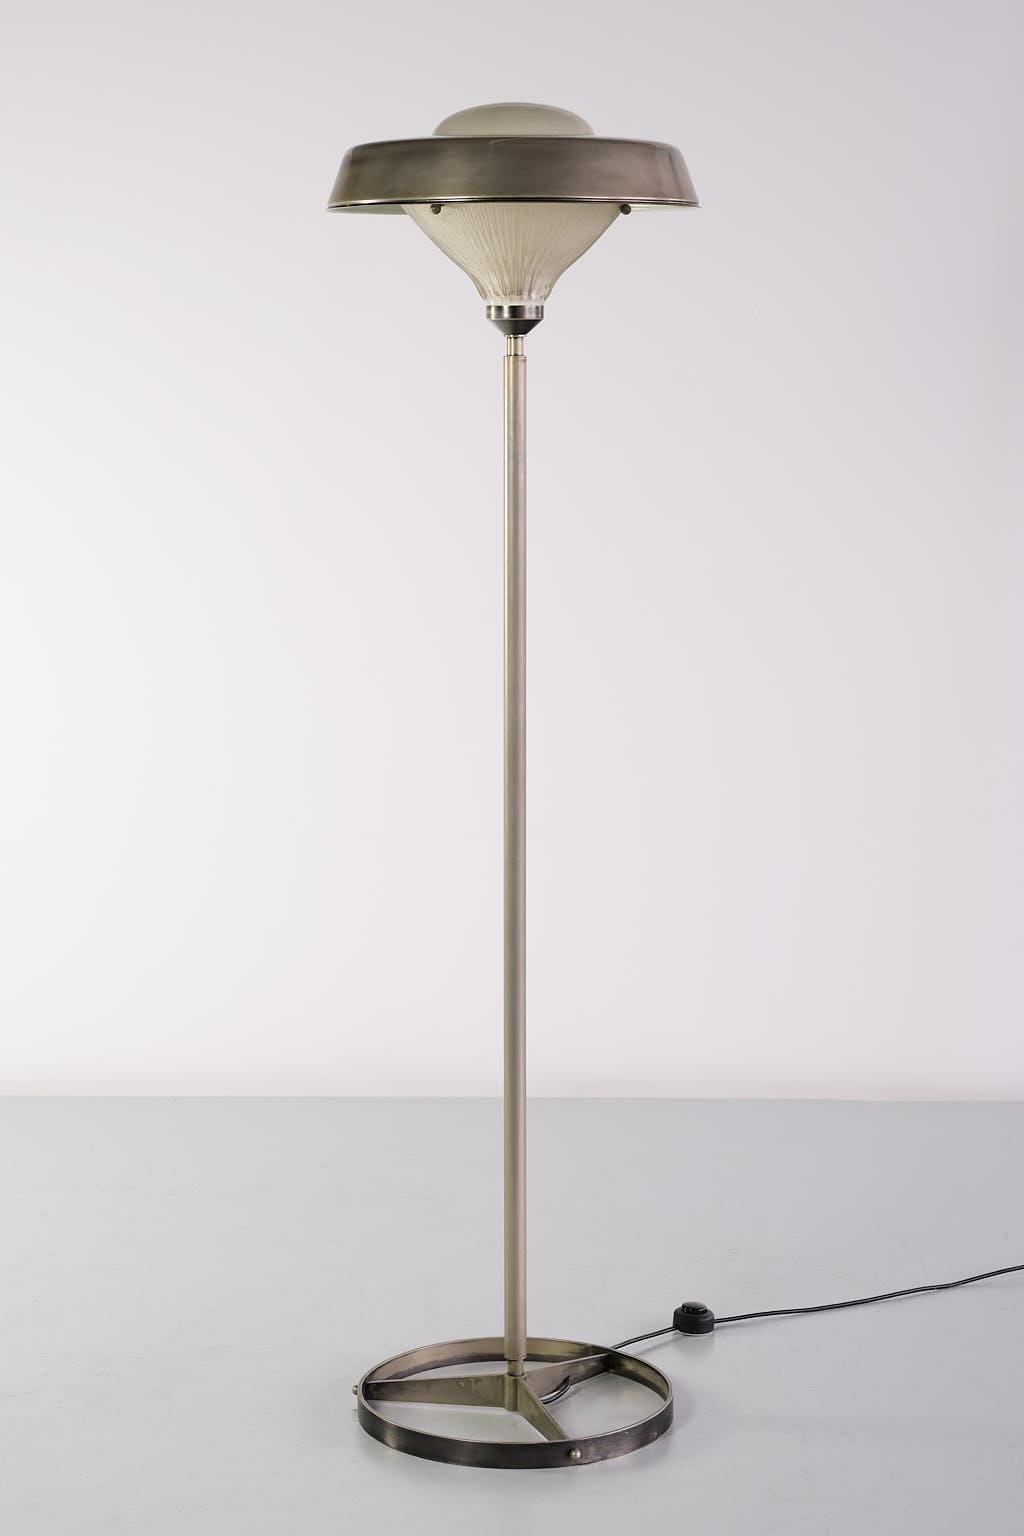 Studio BBPR 'Talia' Floor Lamp in Steel and Glass, Artemide, Italy, 1962 For Sale 7